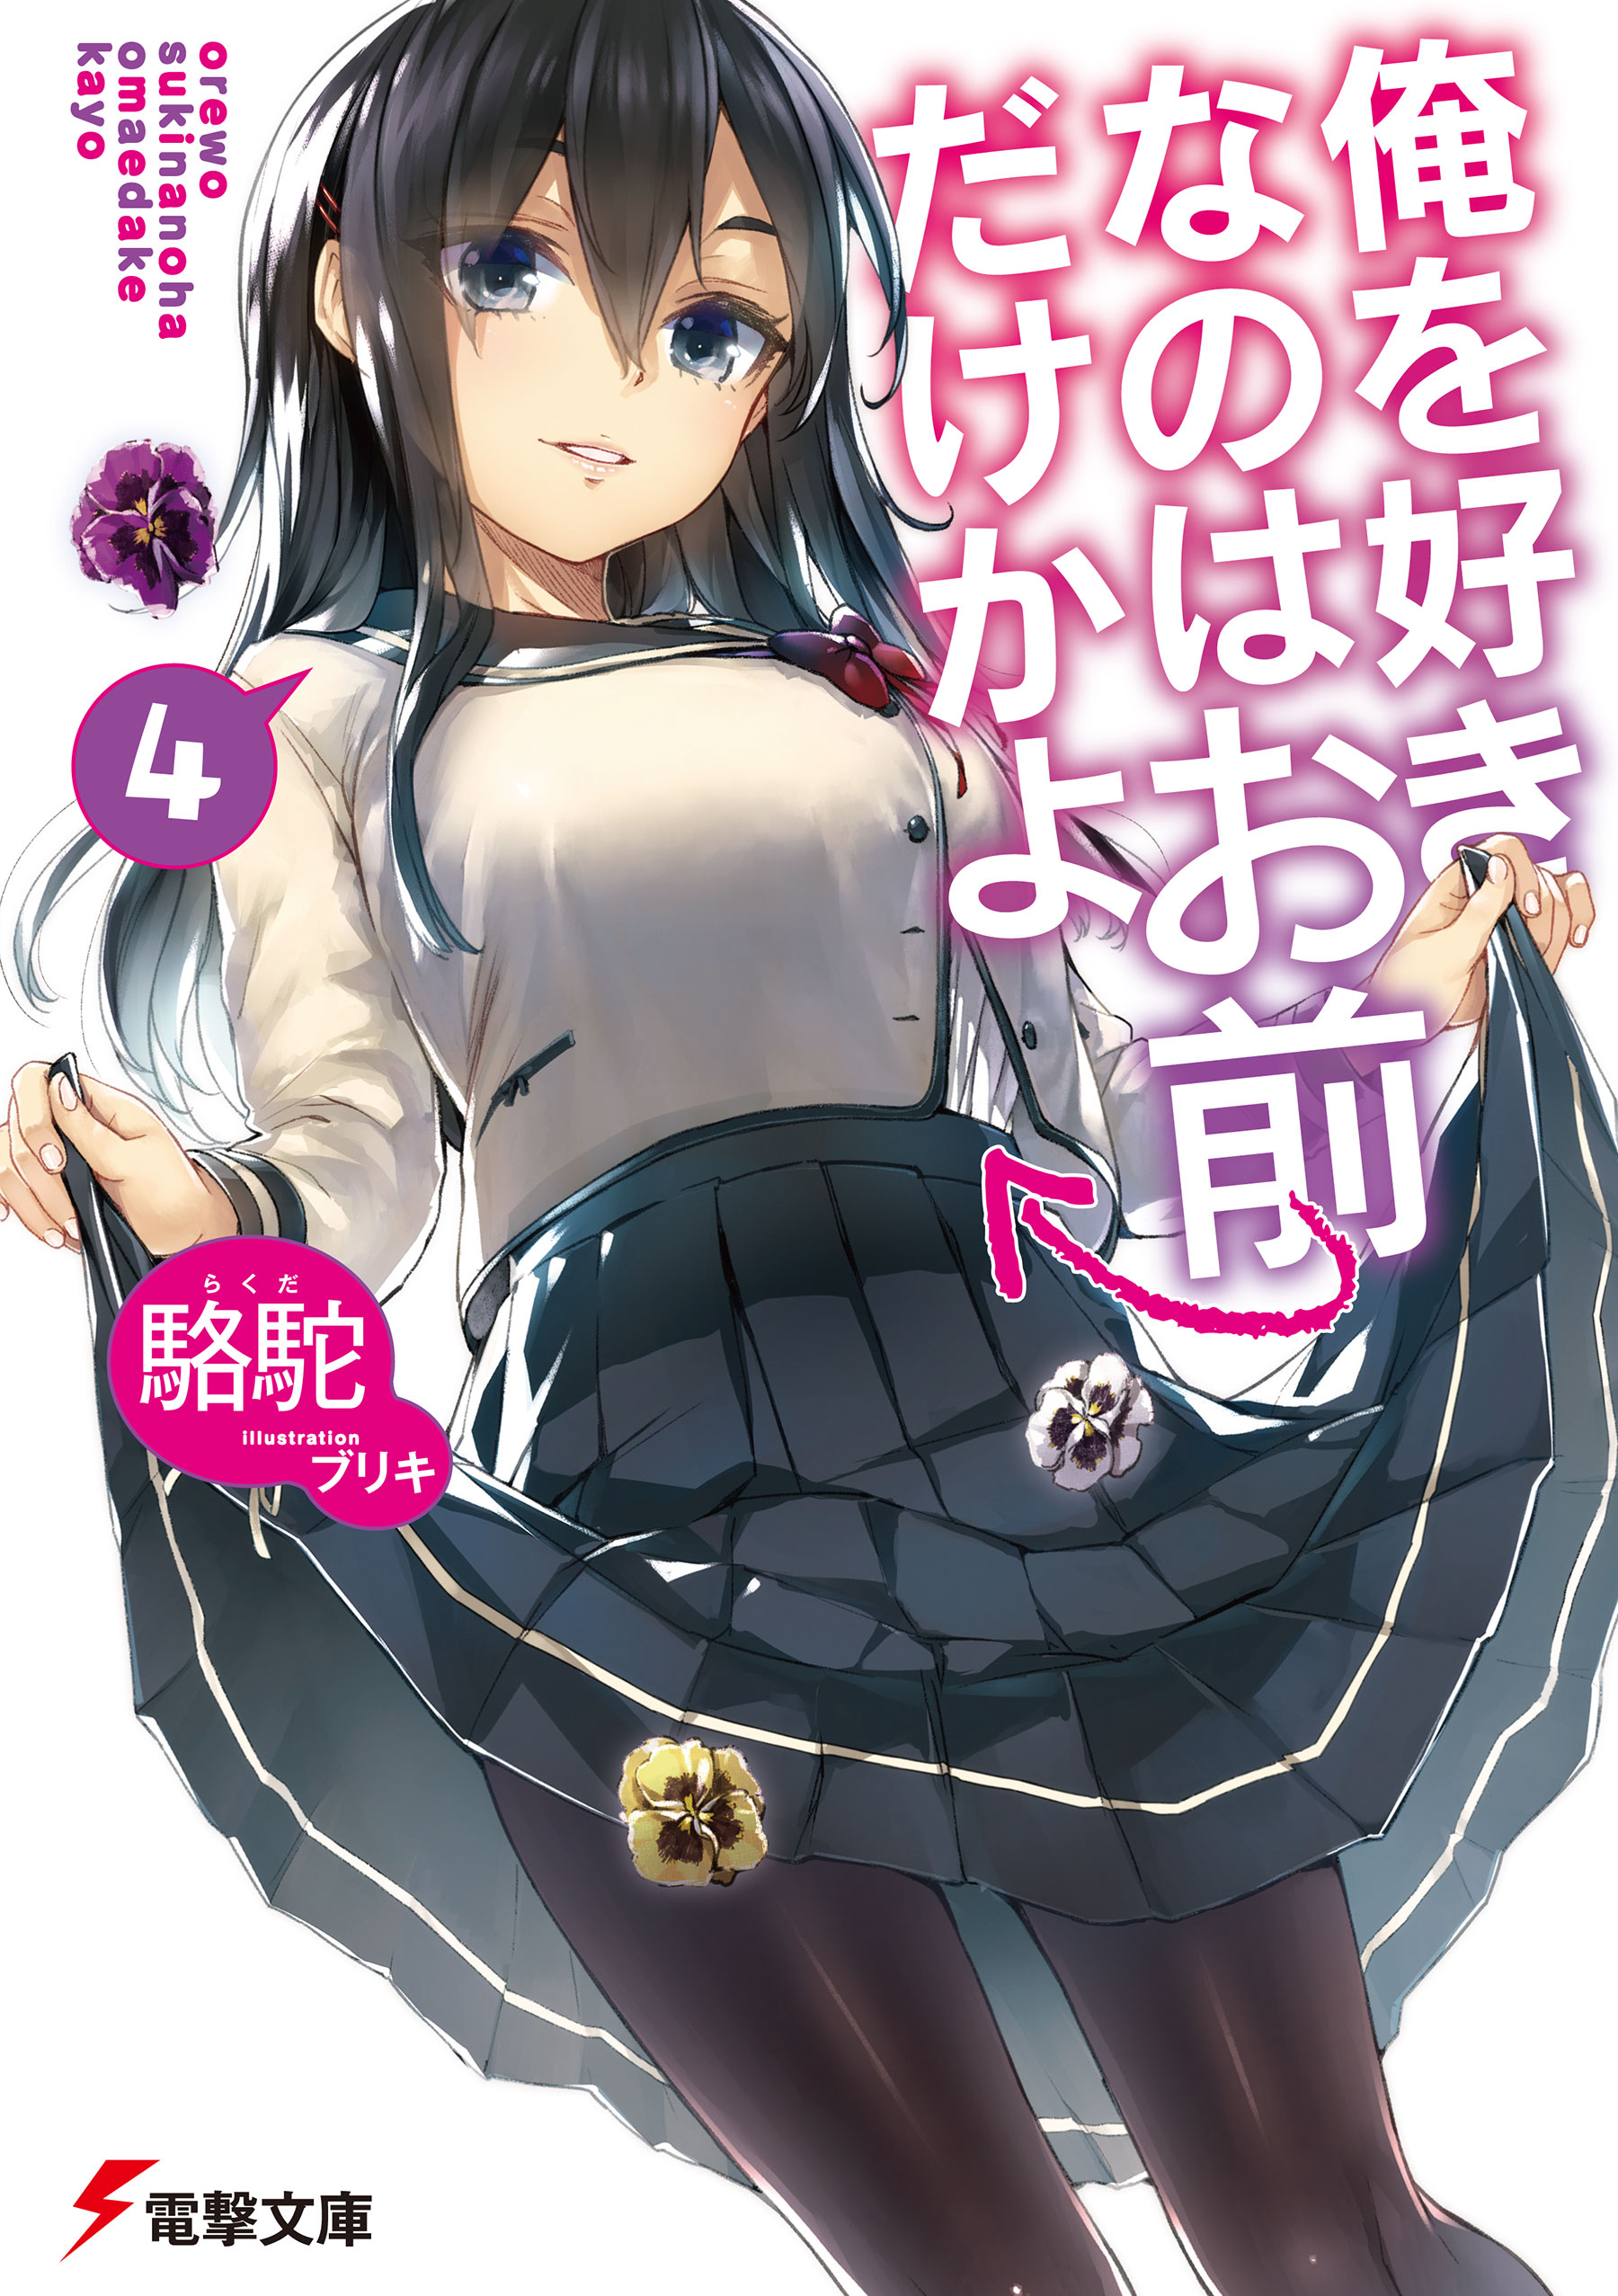 Light Novel Volume 4, OsaMake Wiki